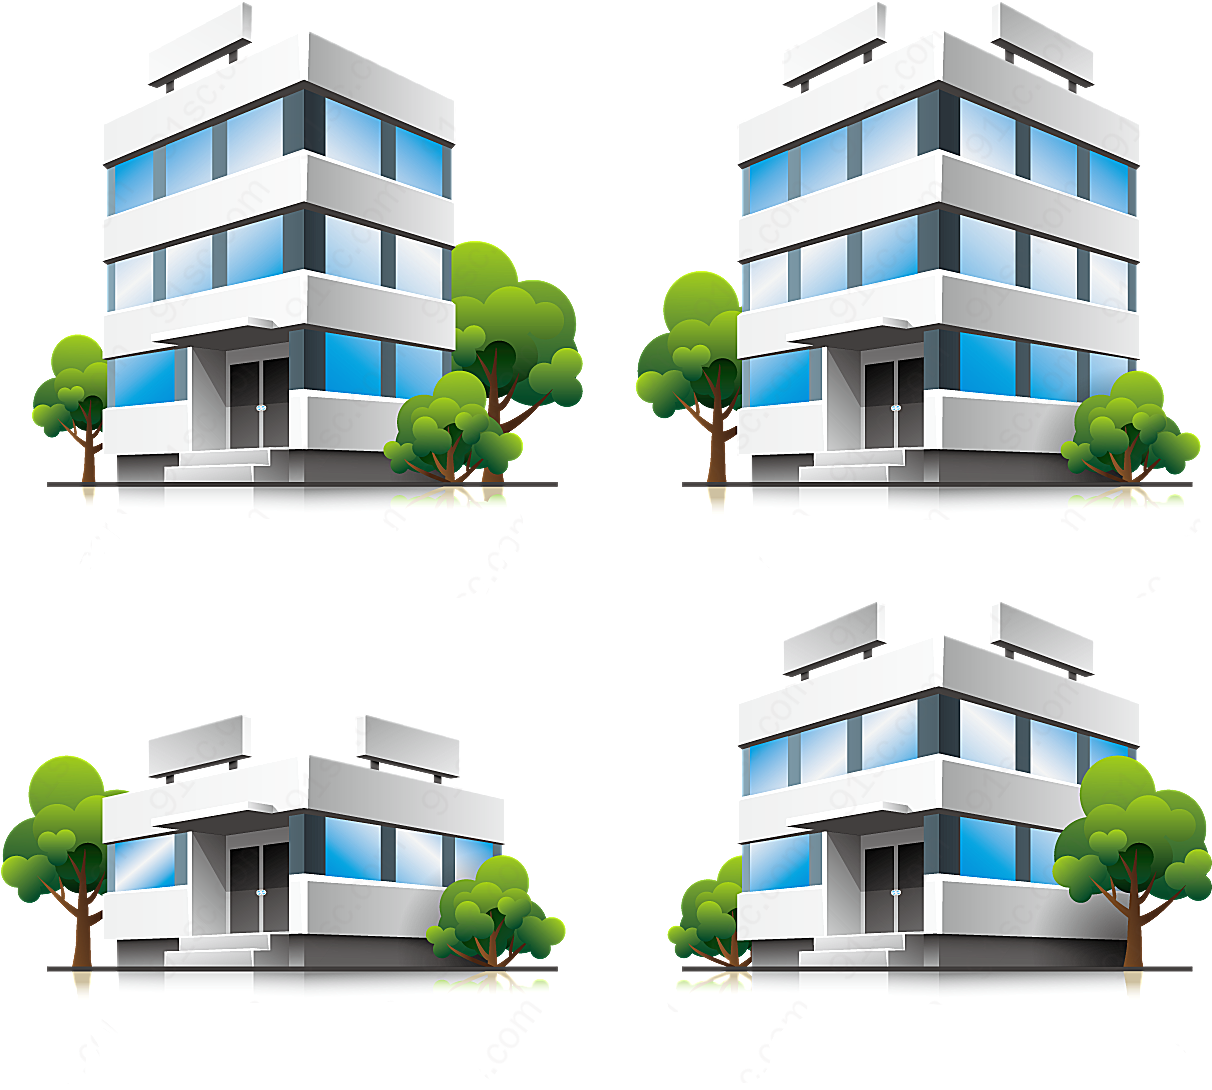 立体房屋模型矢量建筑景观